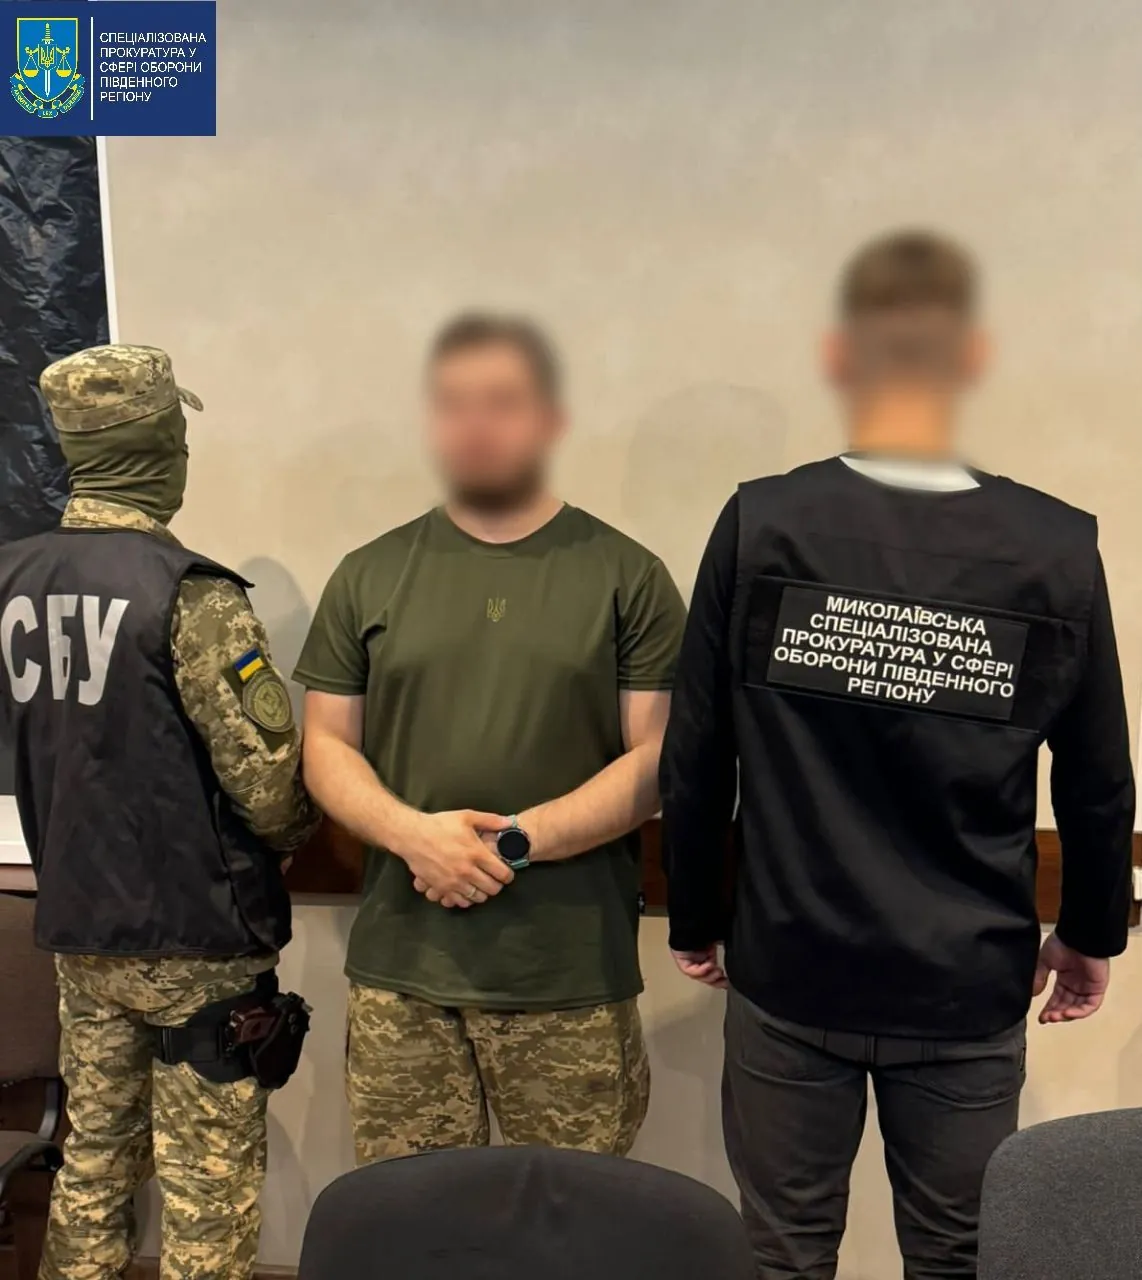 Передавал агенту рф запрещенную информацию: на Николаевщине сообщено о подозрении военному